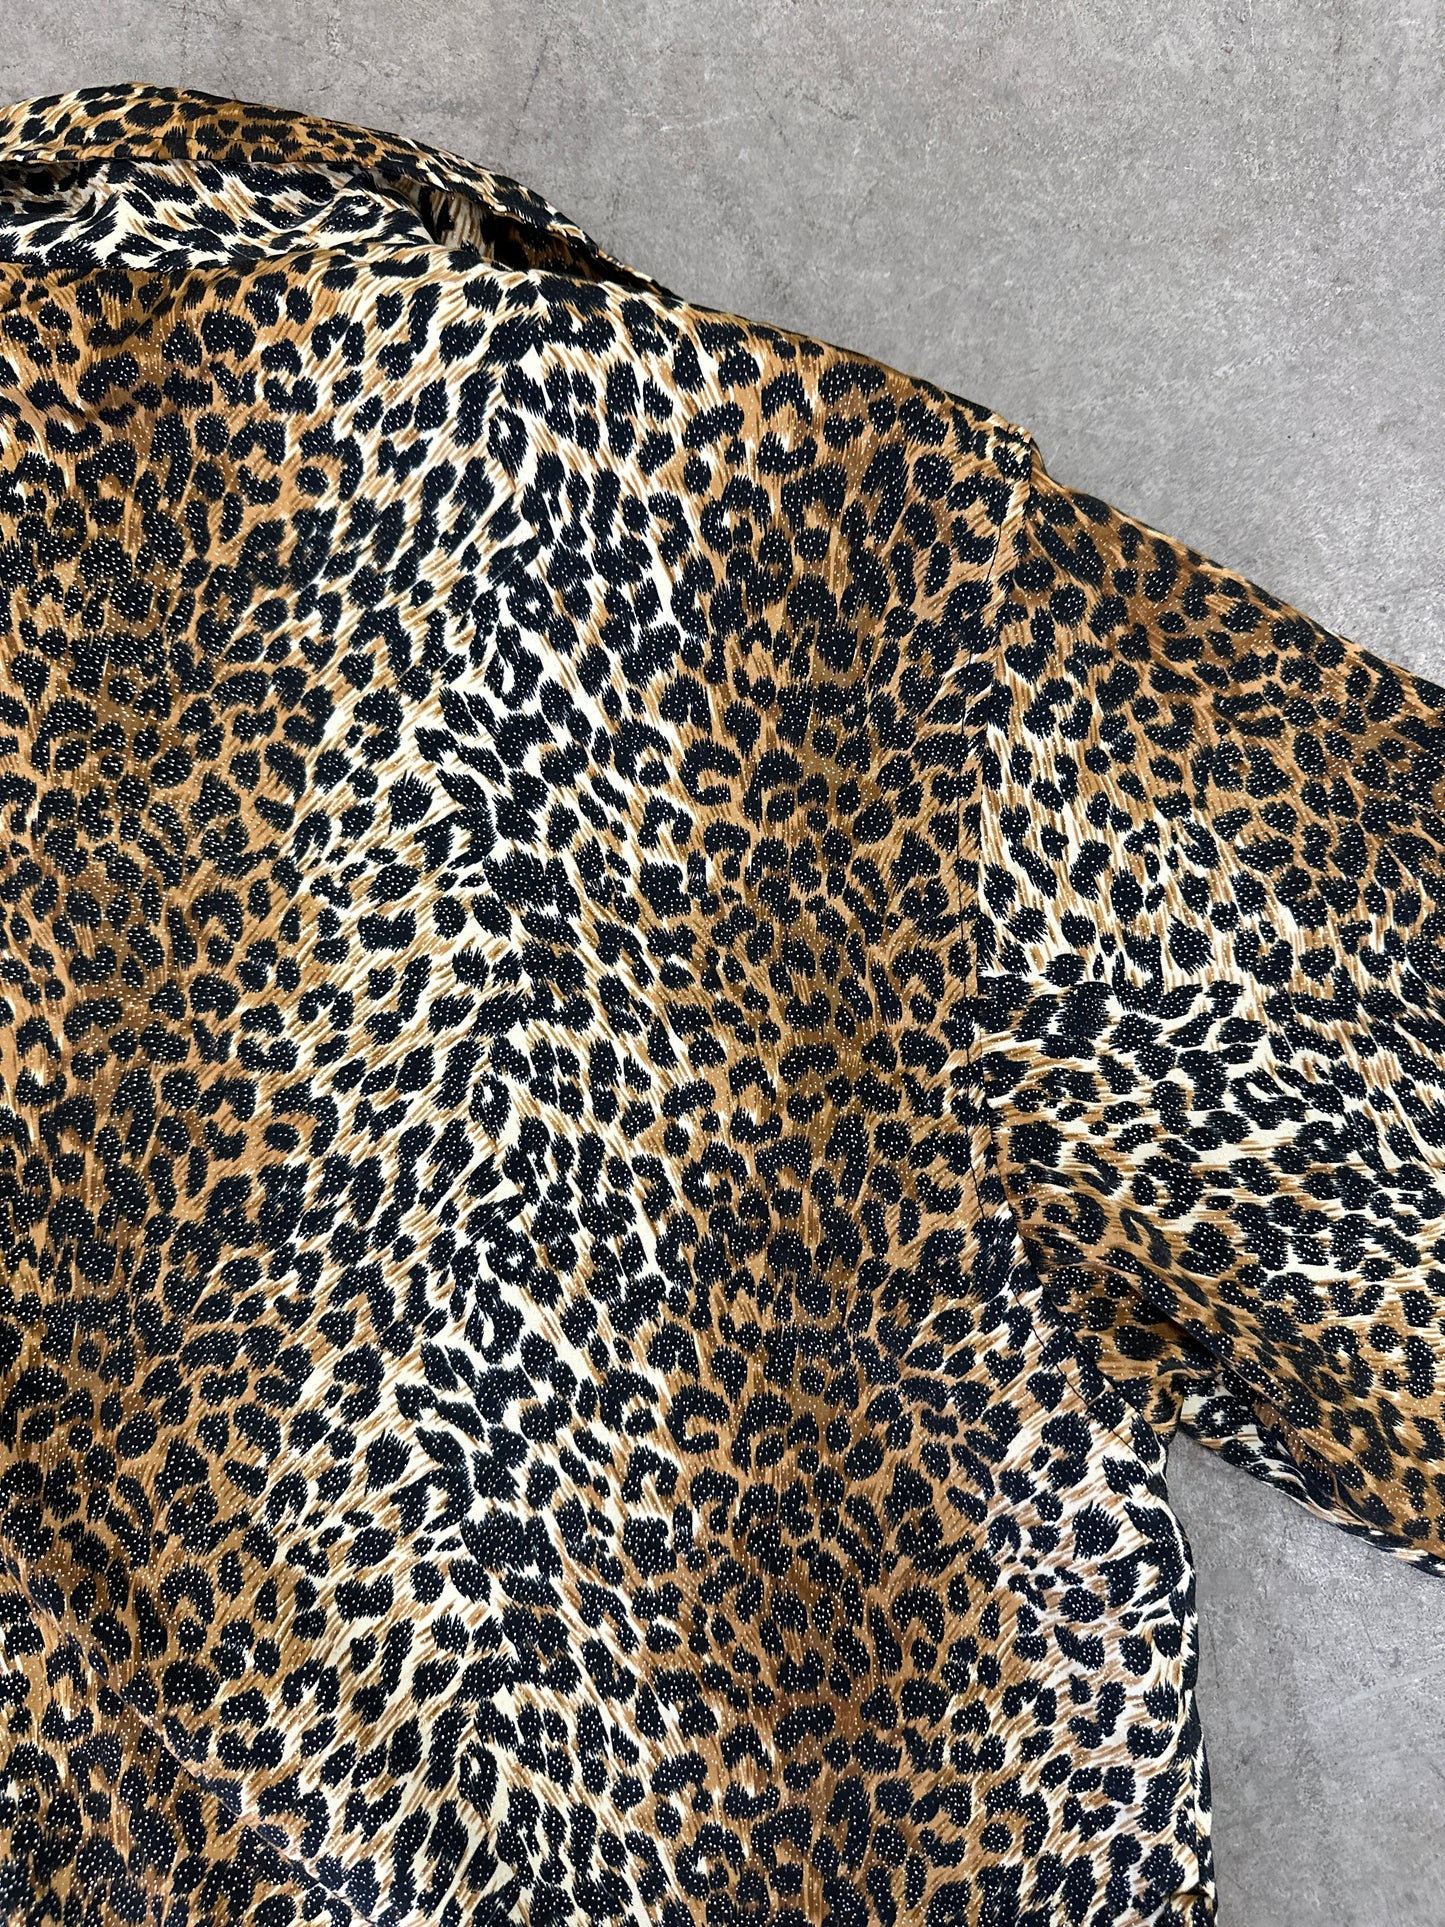 Lightweight Cheetah Trench Coat